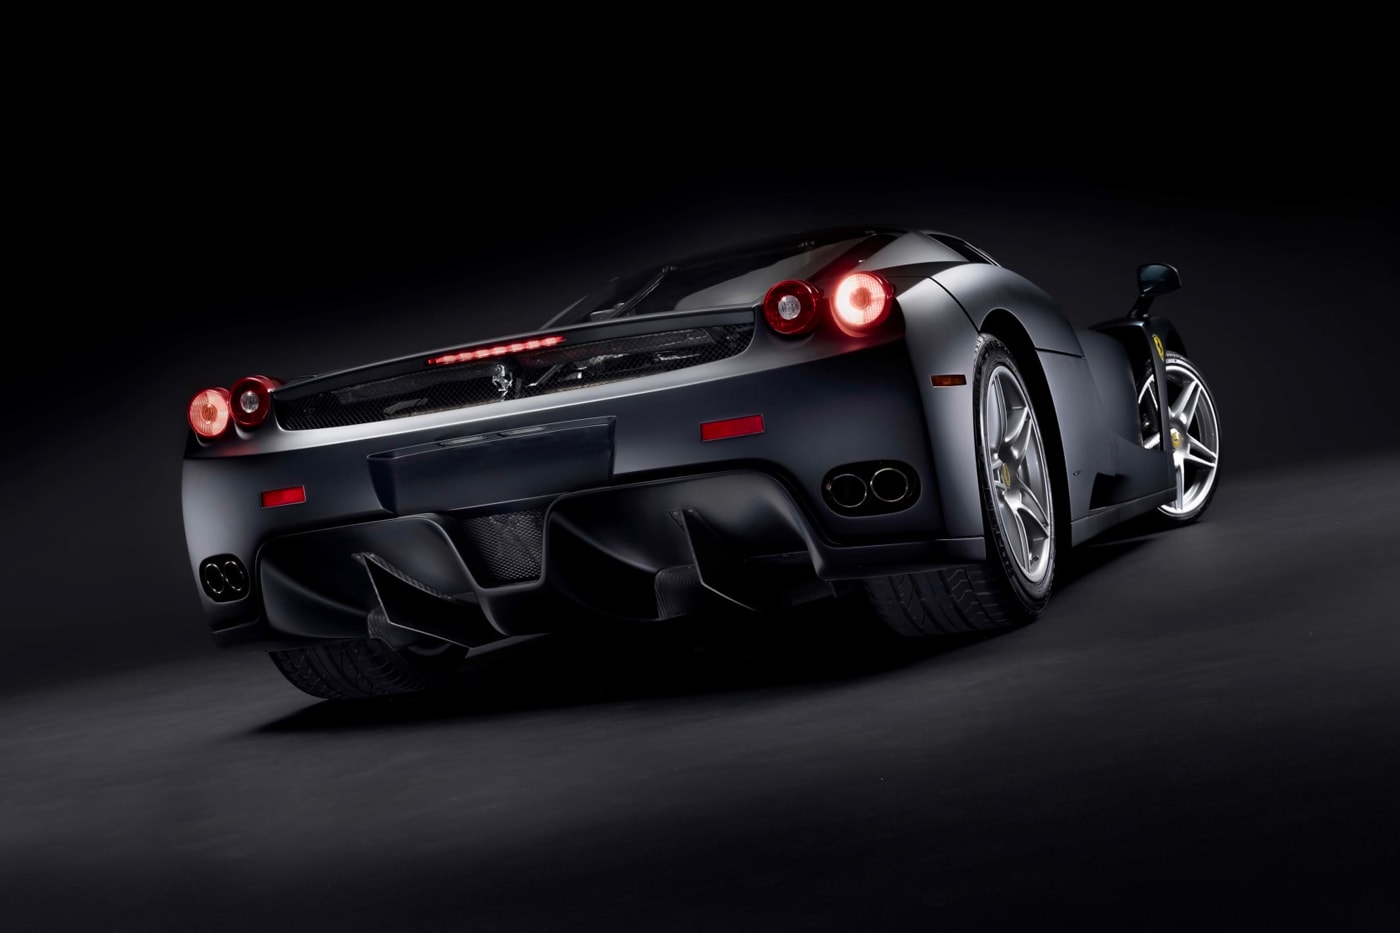 RM Sothebys Ferrari Enzo matte black triple brunei royalty maranello only nero opaco 3500 miles odometer info v 12 136069 info news